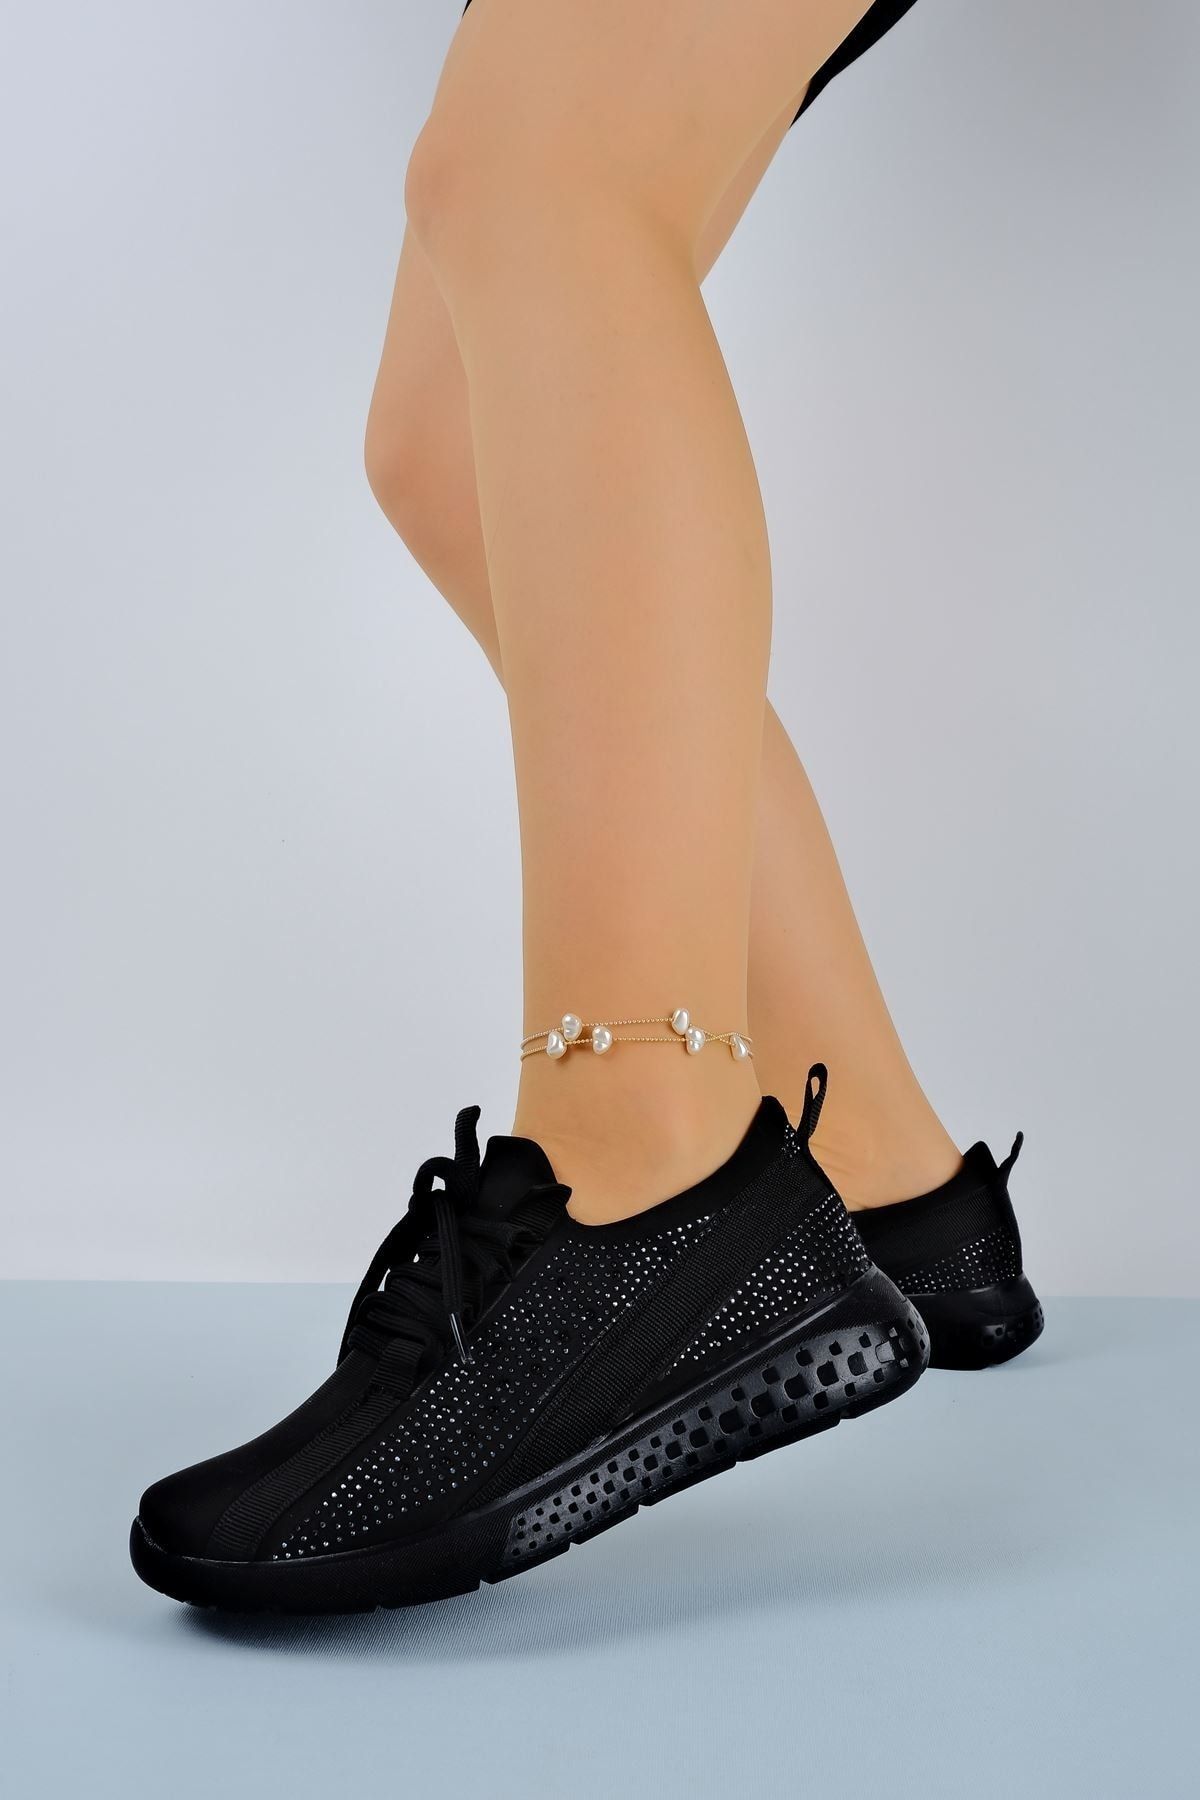 LAL SHOES & BAGS Herbert Kadın Taşlı Bağcıklı Spor Ayakkabı Siyah